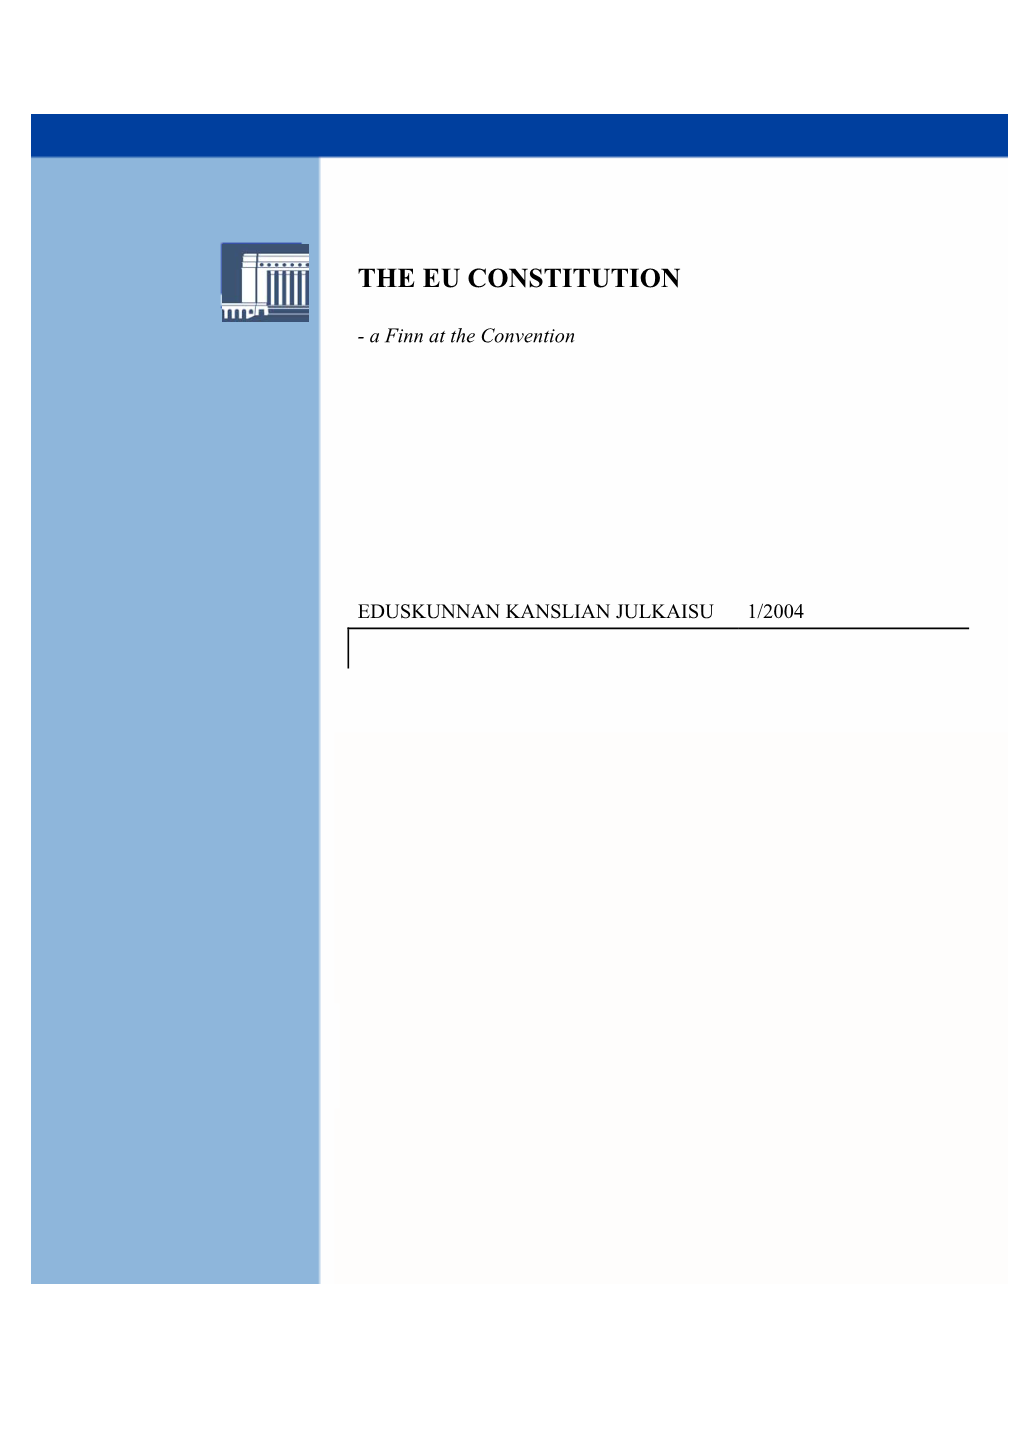 The Eu Constitution